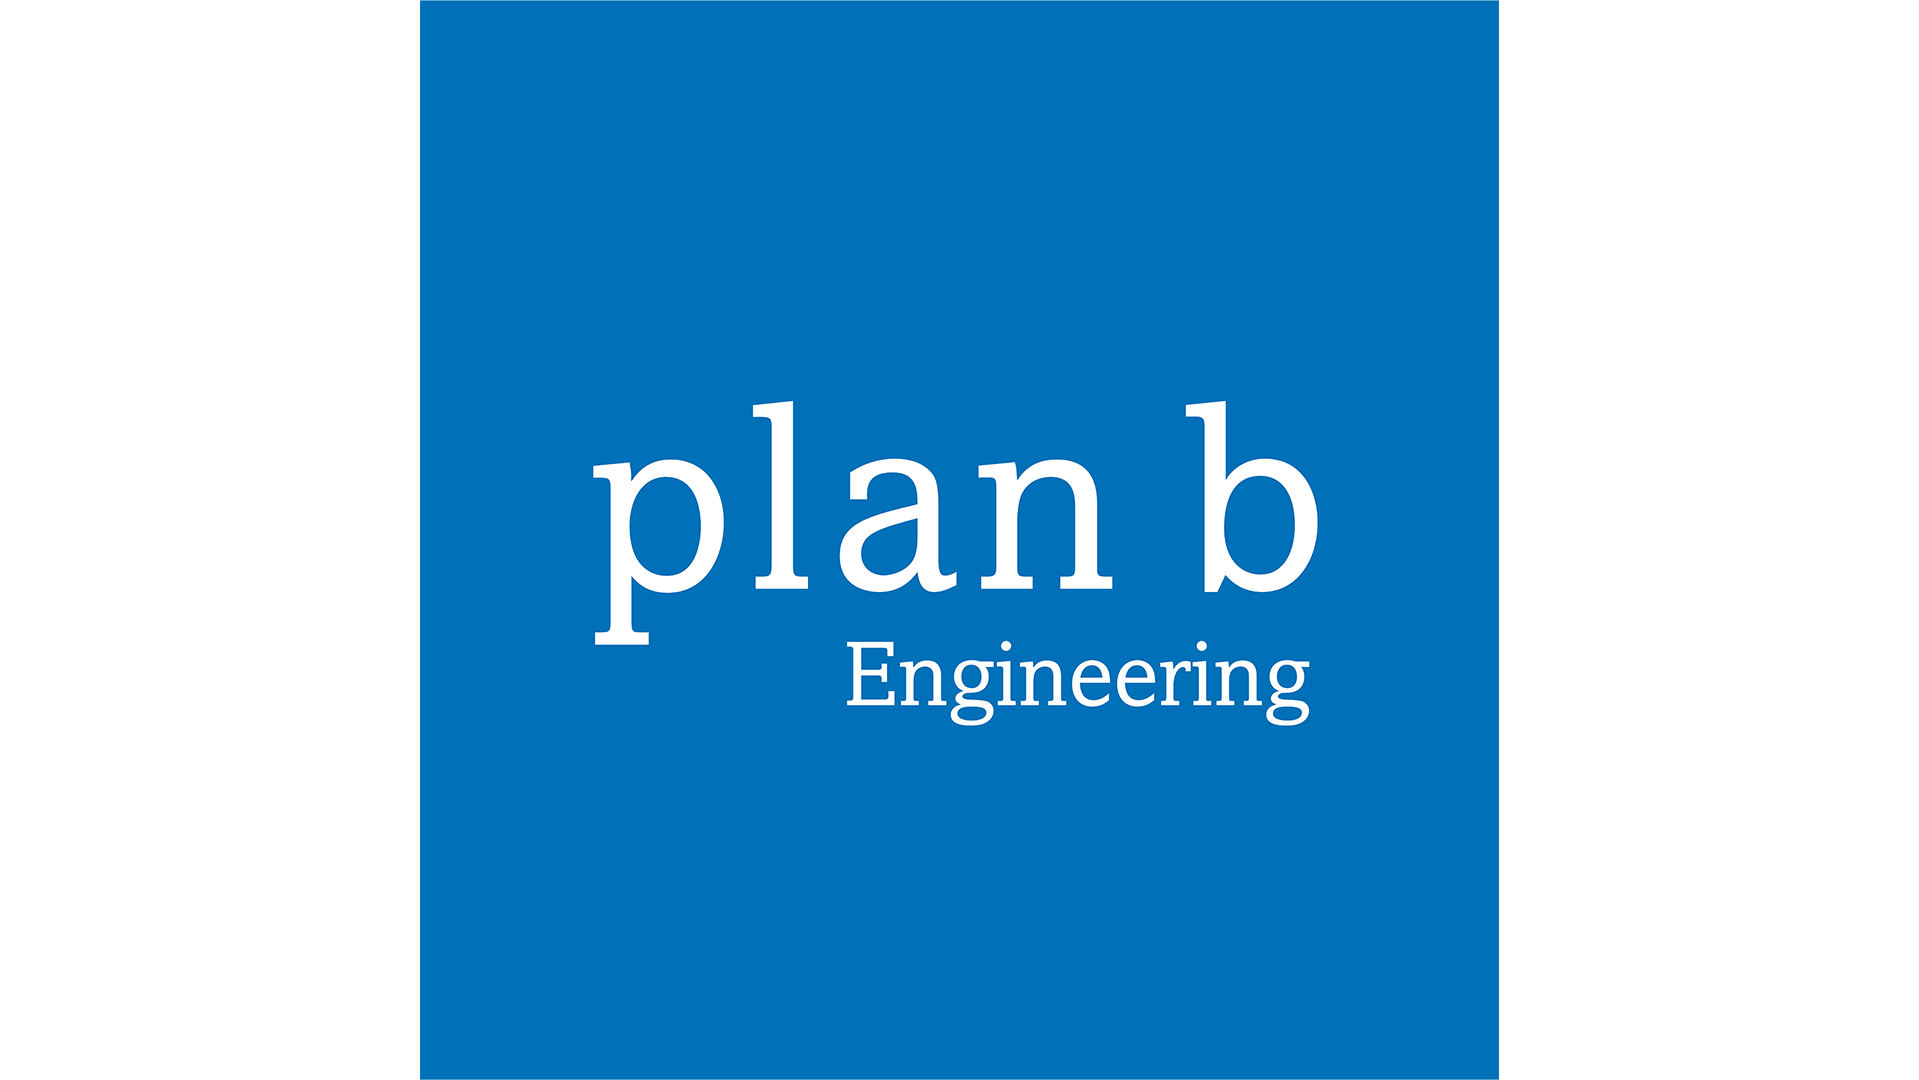 Plan B - Beratende Ingenieure GmbH